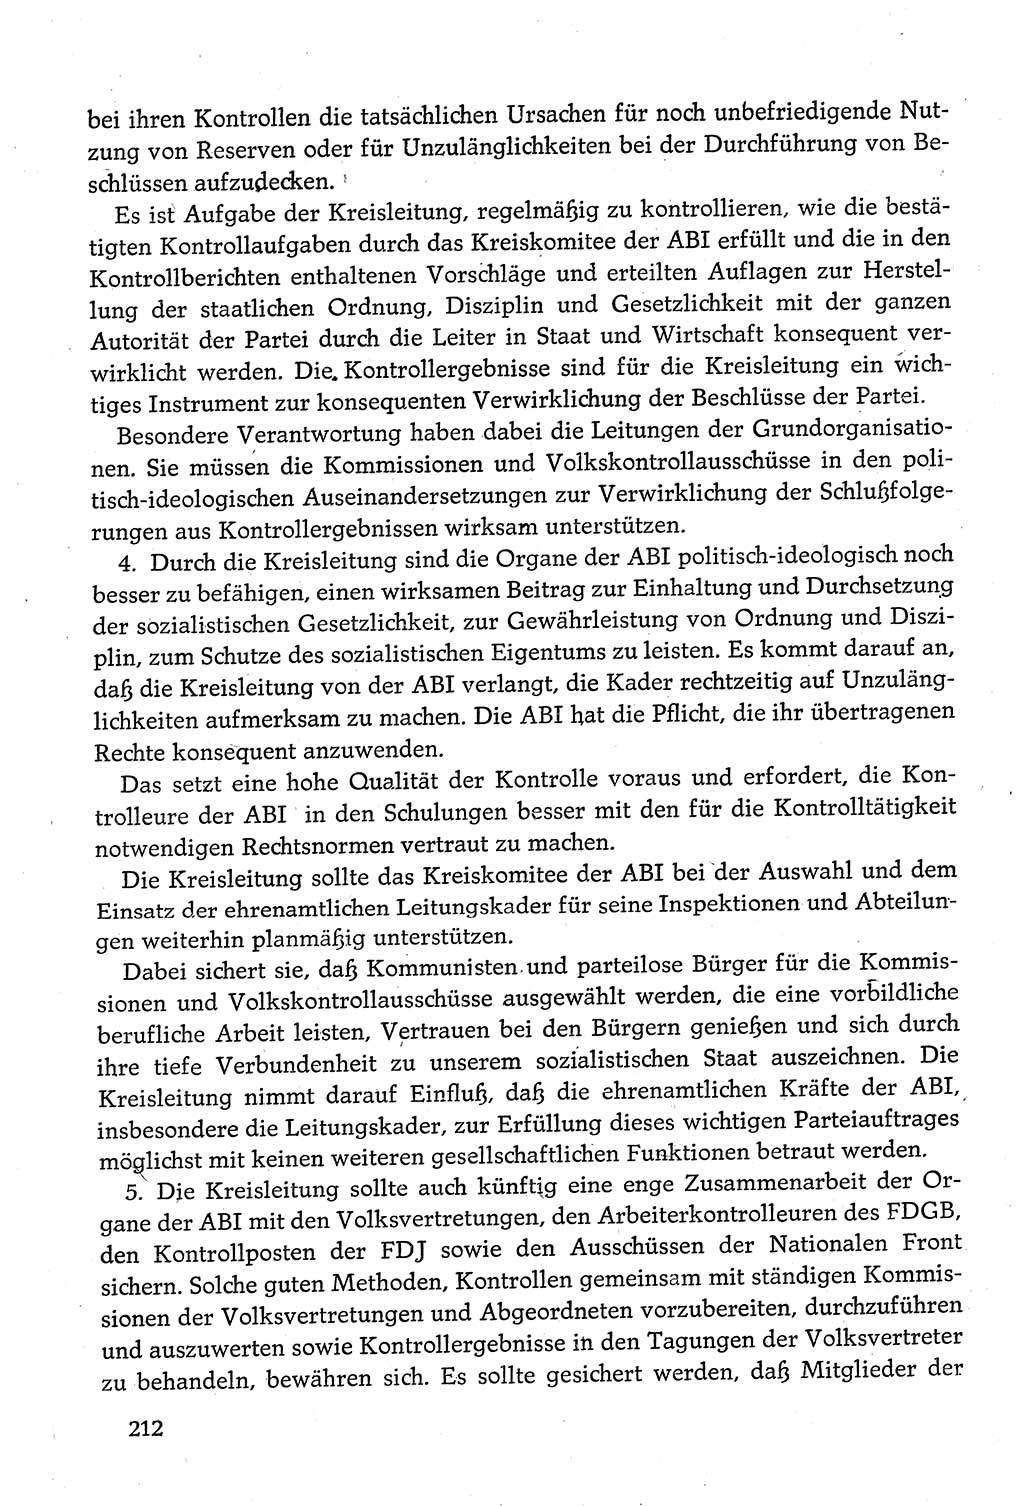 Dokumente der Sozialistischen Einheitspartei Deutschlands (SED) [Deutsche Demokratische Republik (DDR)] 1980-1981, Seite 212 (Dok. SED DDR 1980-1981, S. 212)